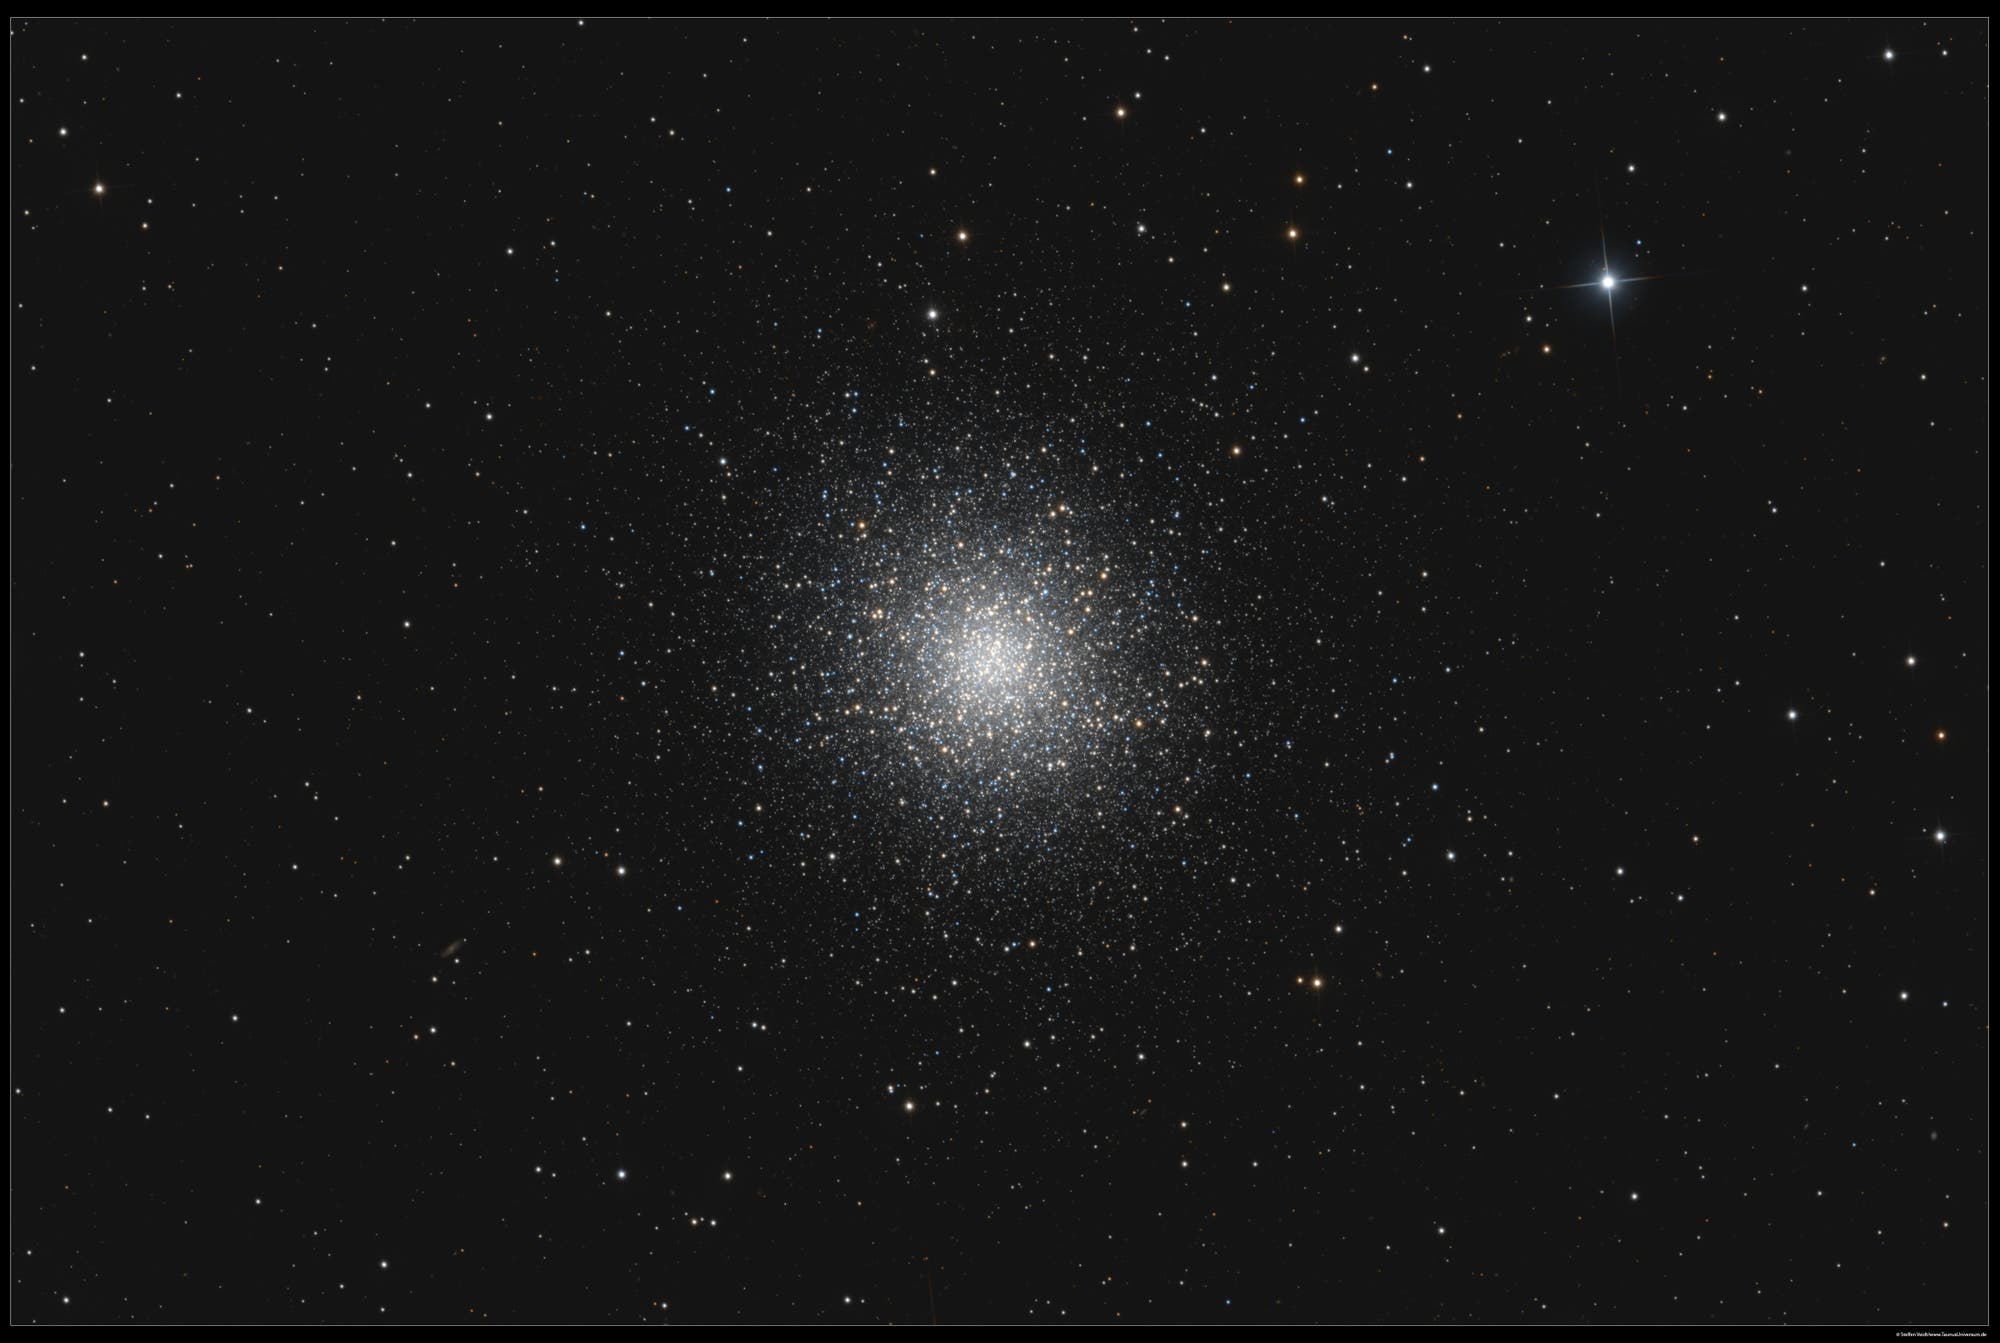 Der Herkuleshaufen Messier 13